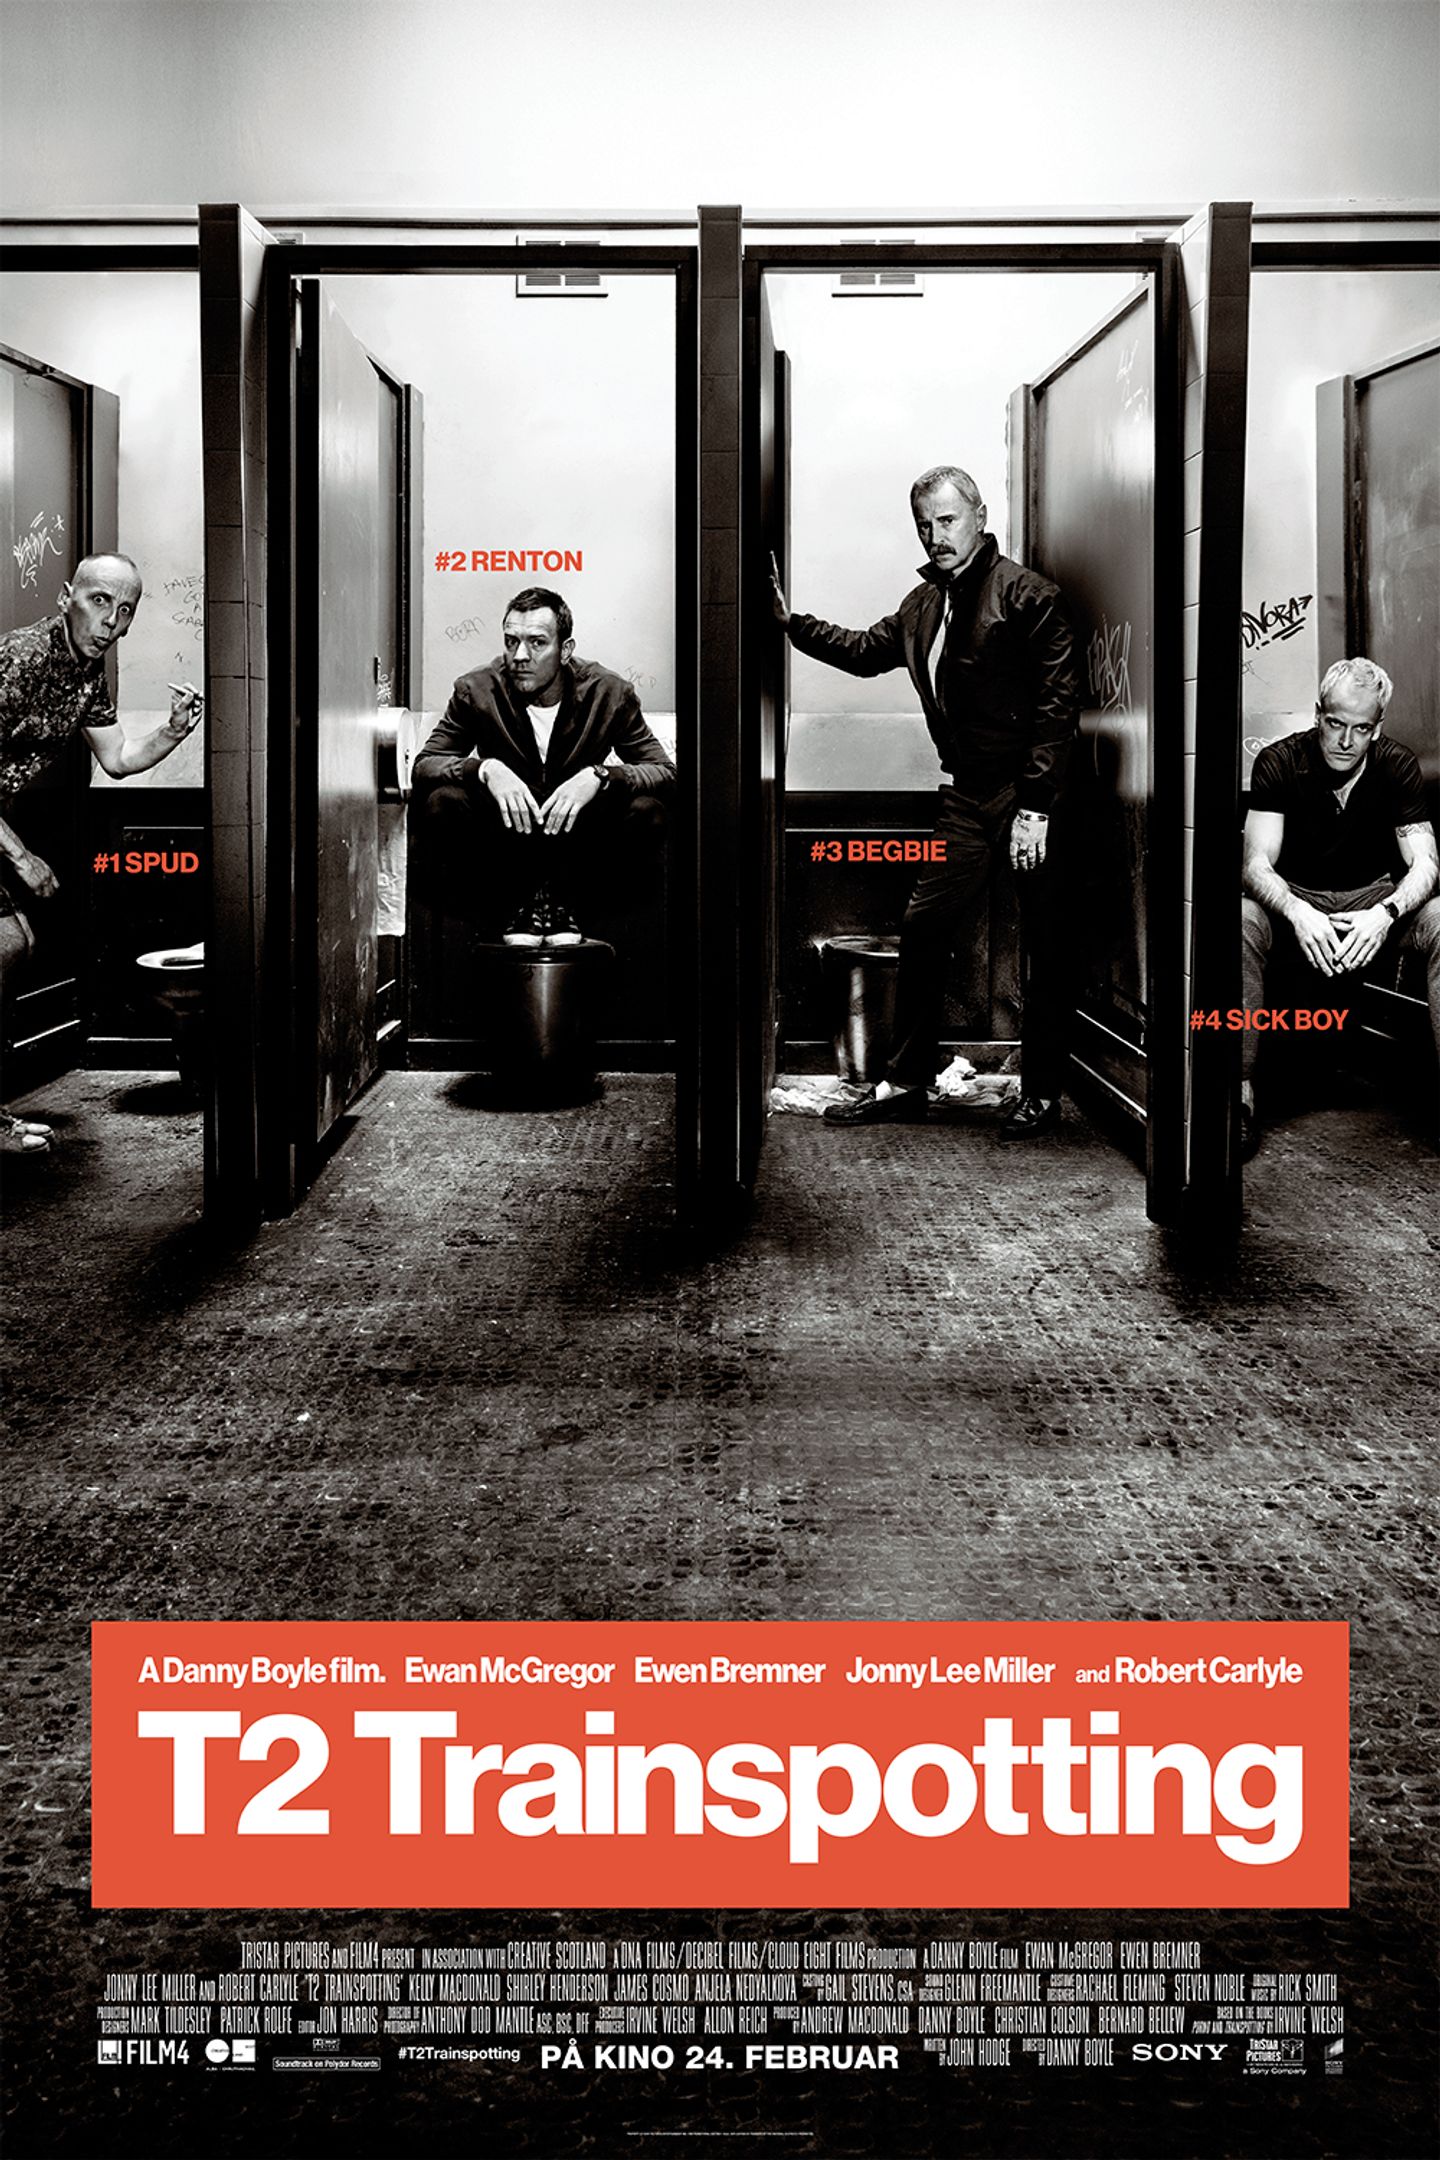 Plakat for 'T2 Trainspotting'